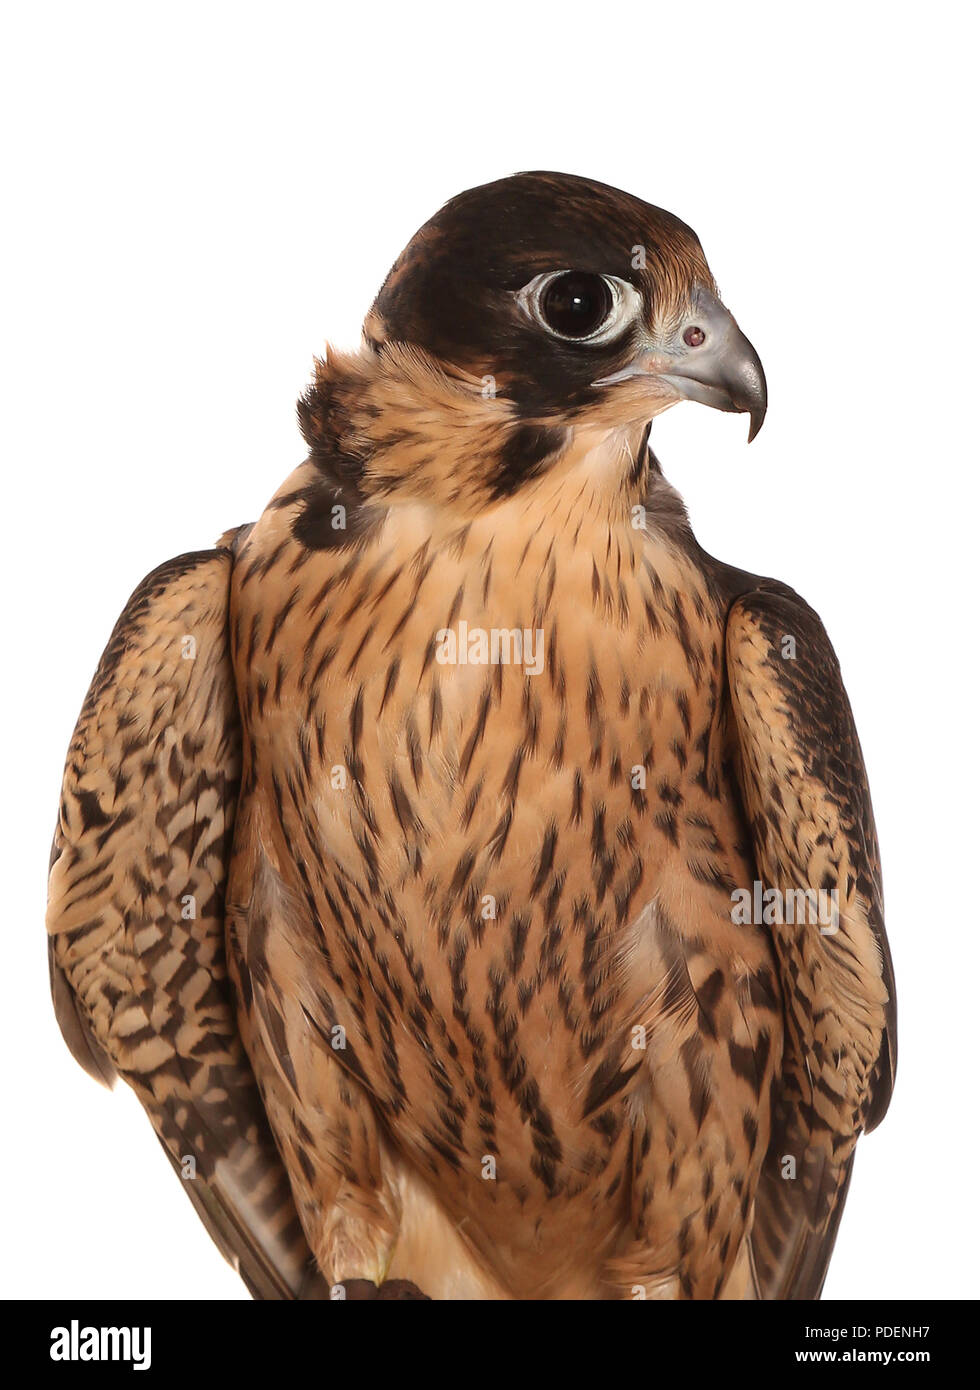 portrait of perigrine falcon in a studio Stock Photo